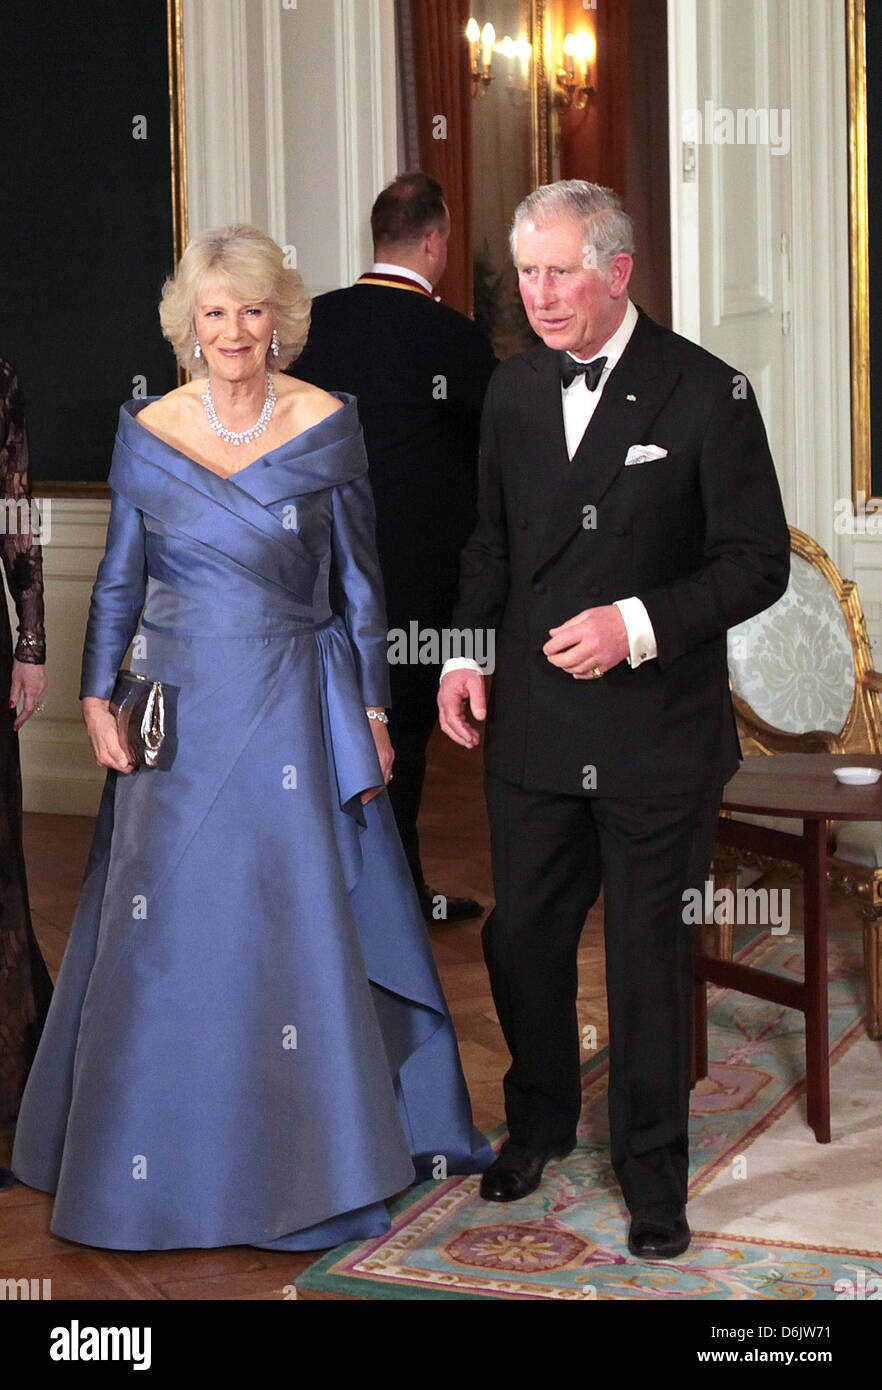 Ein offizielles Bild von Großbritanniens Camilla, Herzogin von Cornwall und Charles, Prinz von Wales, im Rahmen eines Empfangs im Christian VII Palace in Amalienborg in Dänemark, 26. März 2012. Foto: Albert Nieboer Niederlande Stockfoto